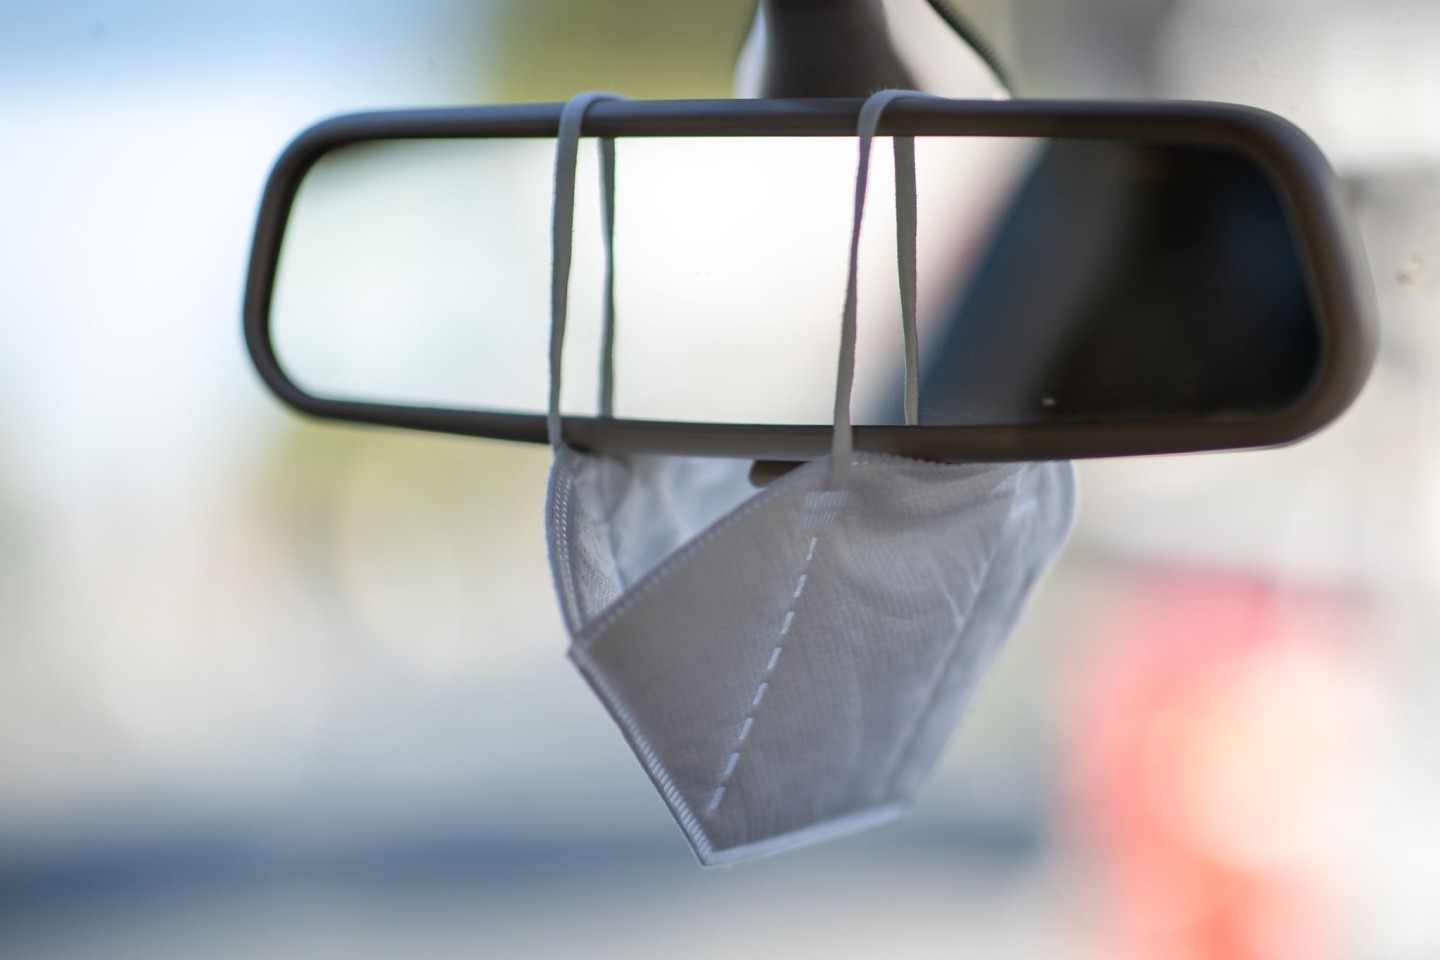 Eine FFP2-Maske hängt am Rückspiegel eines Autos (Symbolbild).